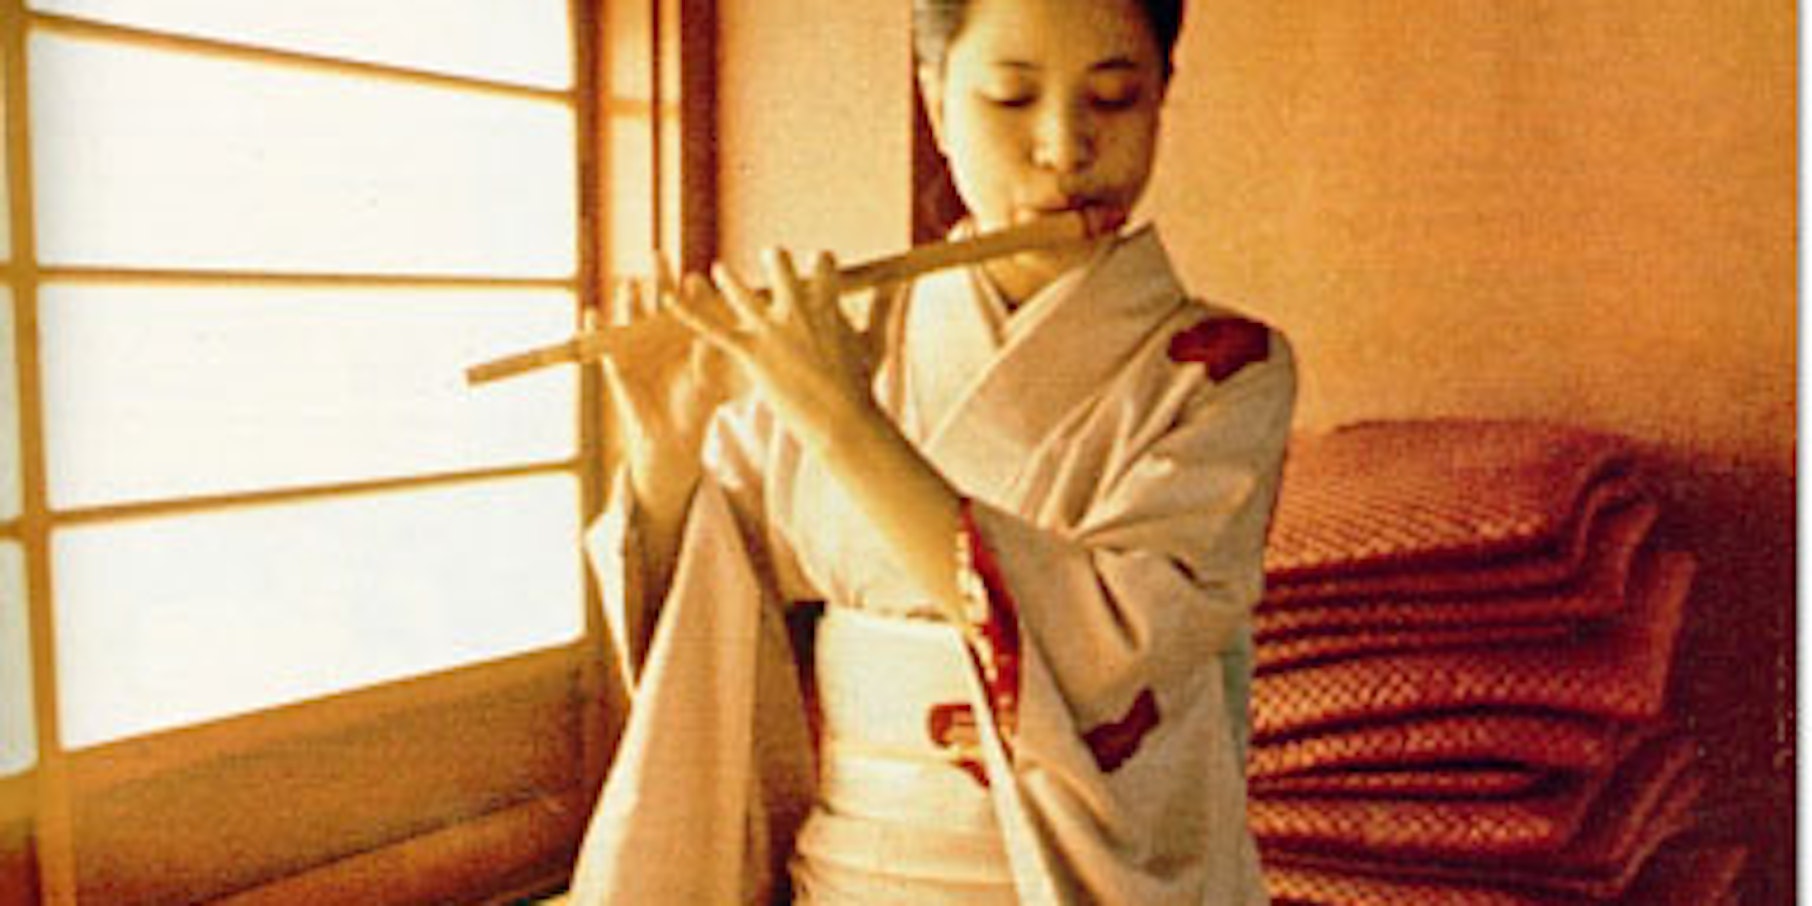 Auf der ersten Titelseite von Prisma, die den Zeitraum vom 8. bis zum 14. Februar 1977 umfasste, kündigt das "Wochenmagazin zur Zeitung" einen großen Farbbericht über "Die Geisha Schule" an.